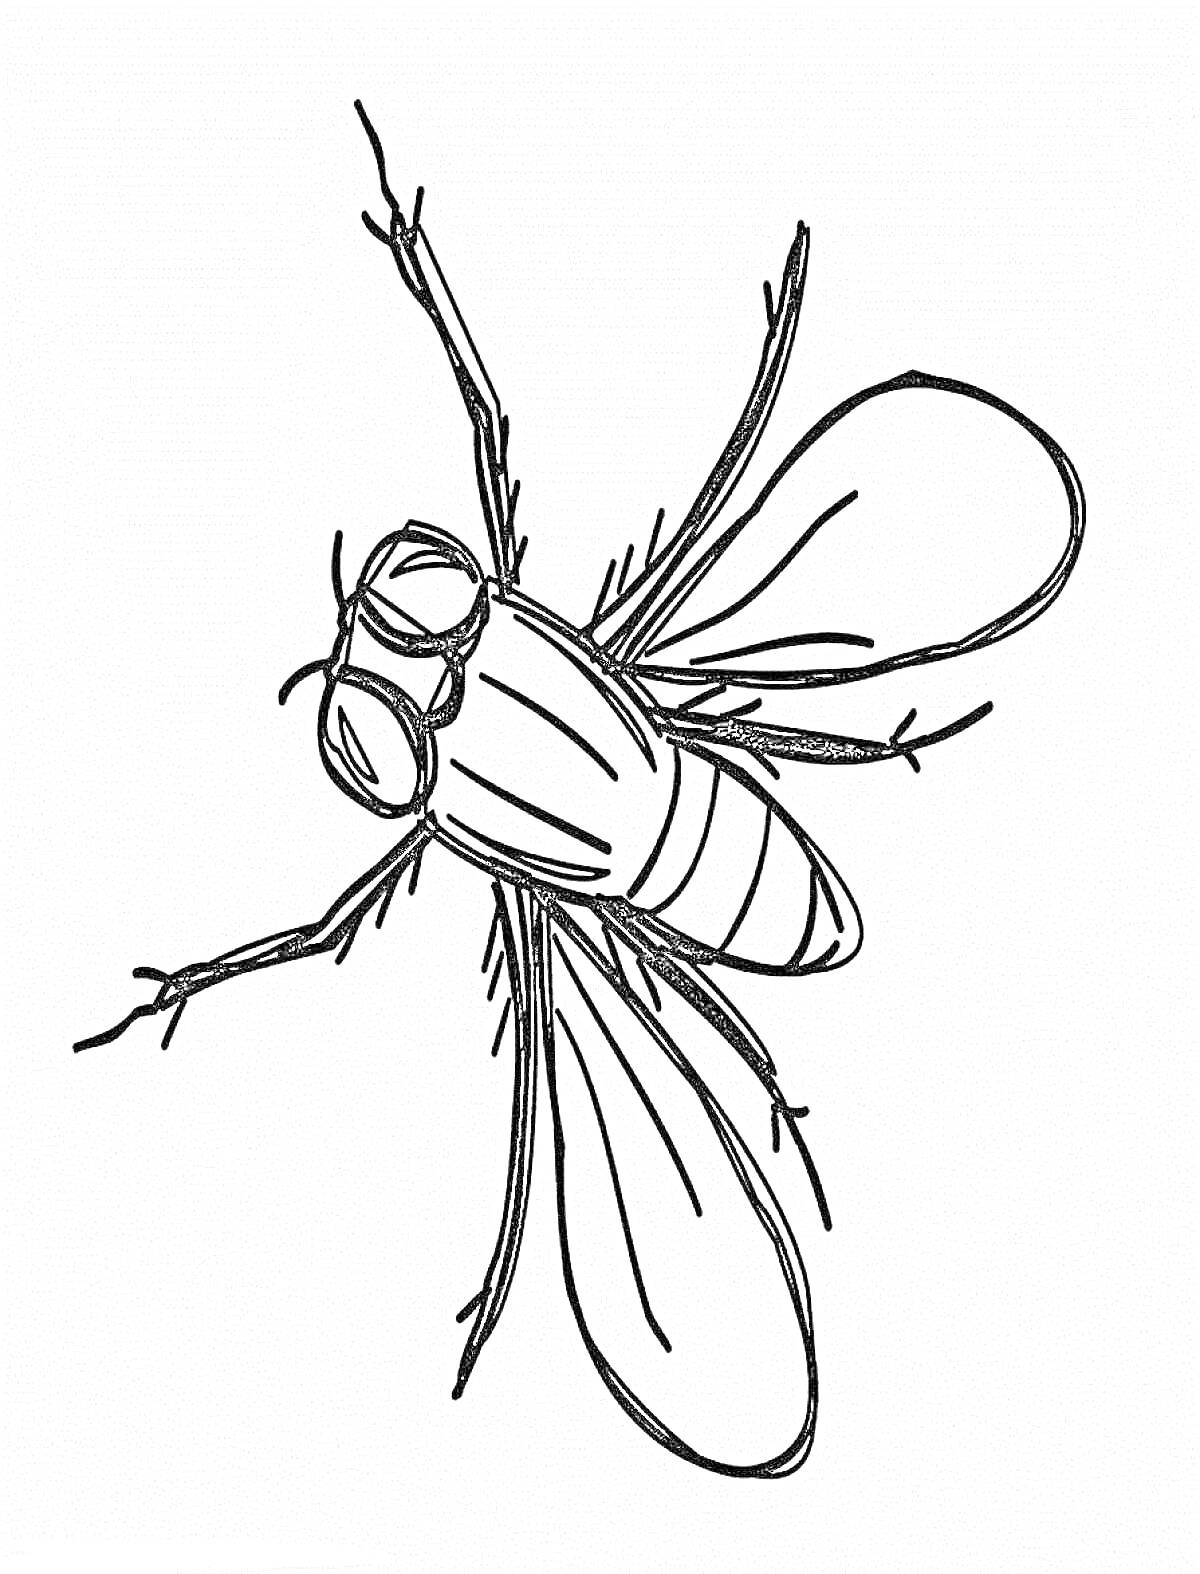 Раскраска Муха с анатомическими деталями: крылья, лапки, глаза, тело